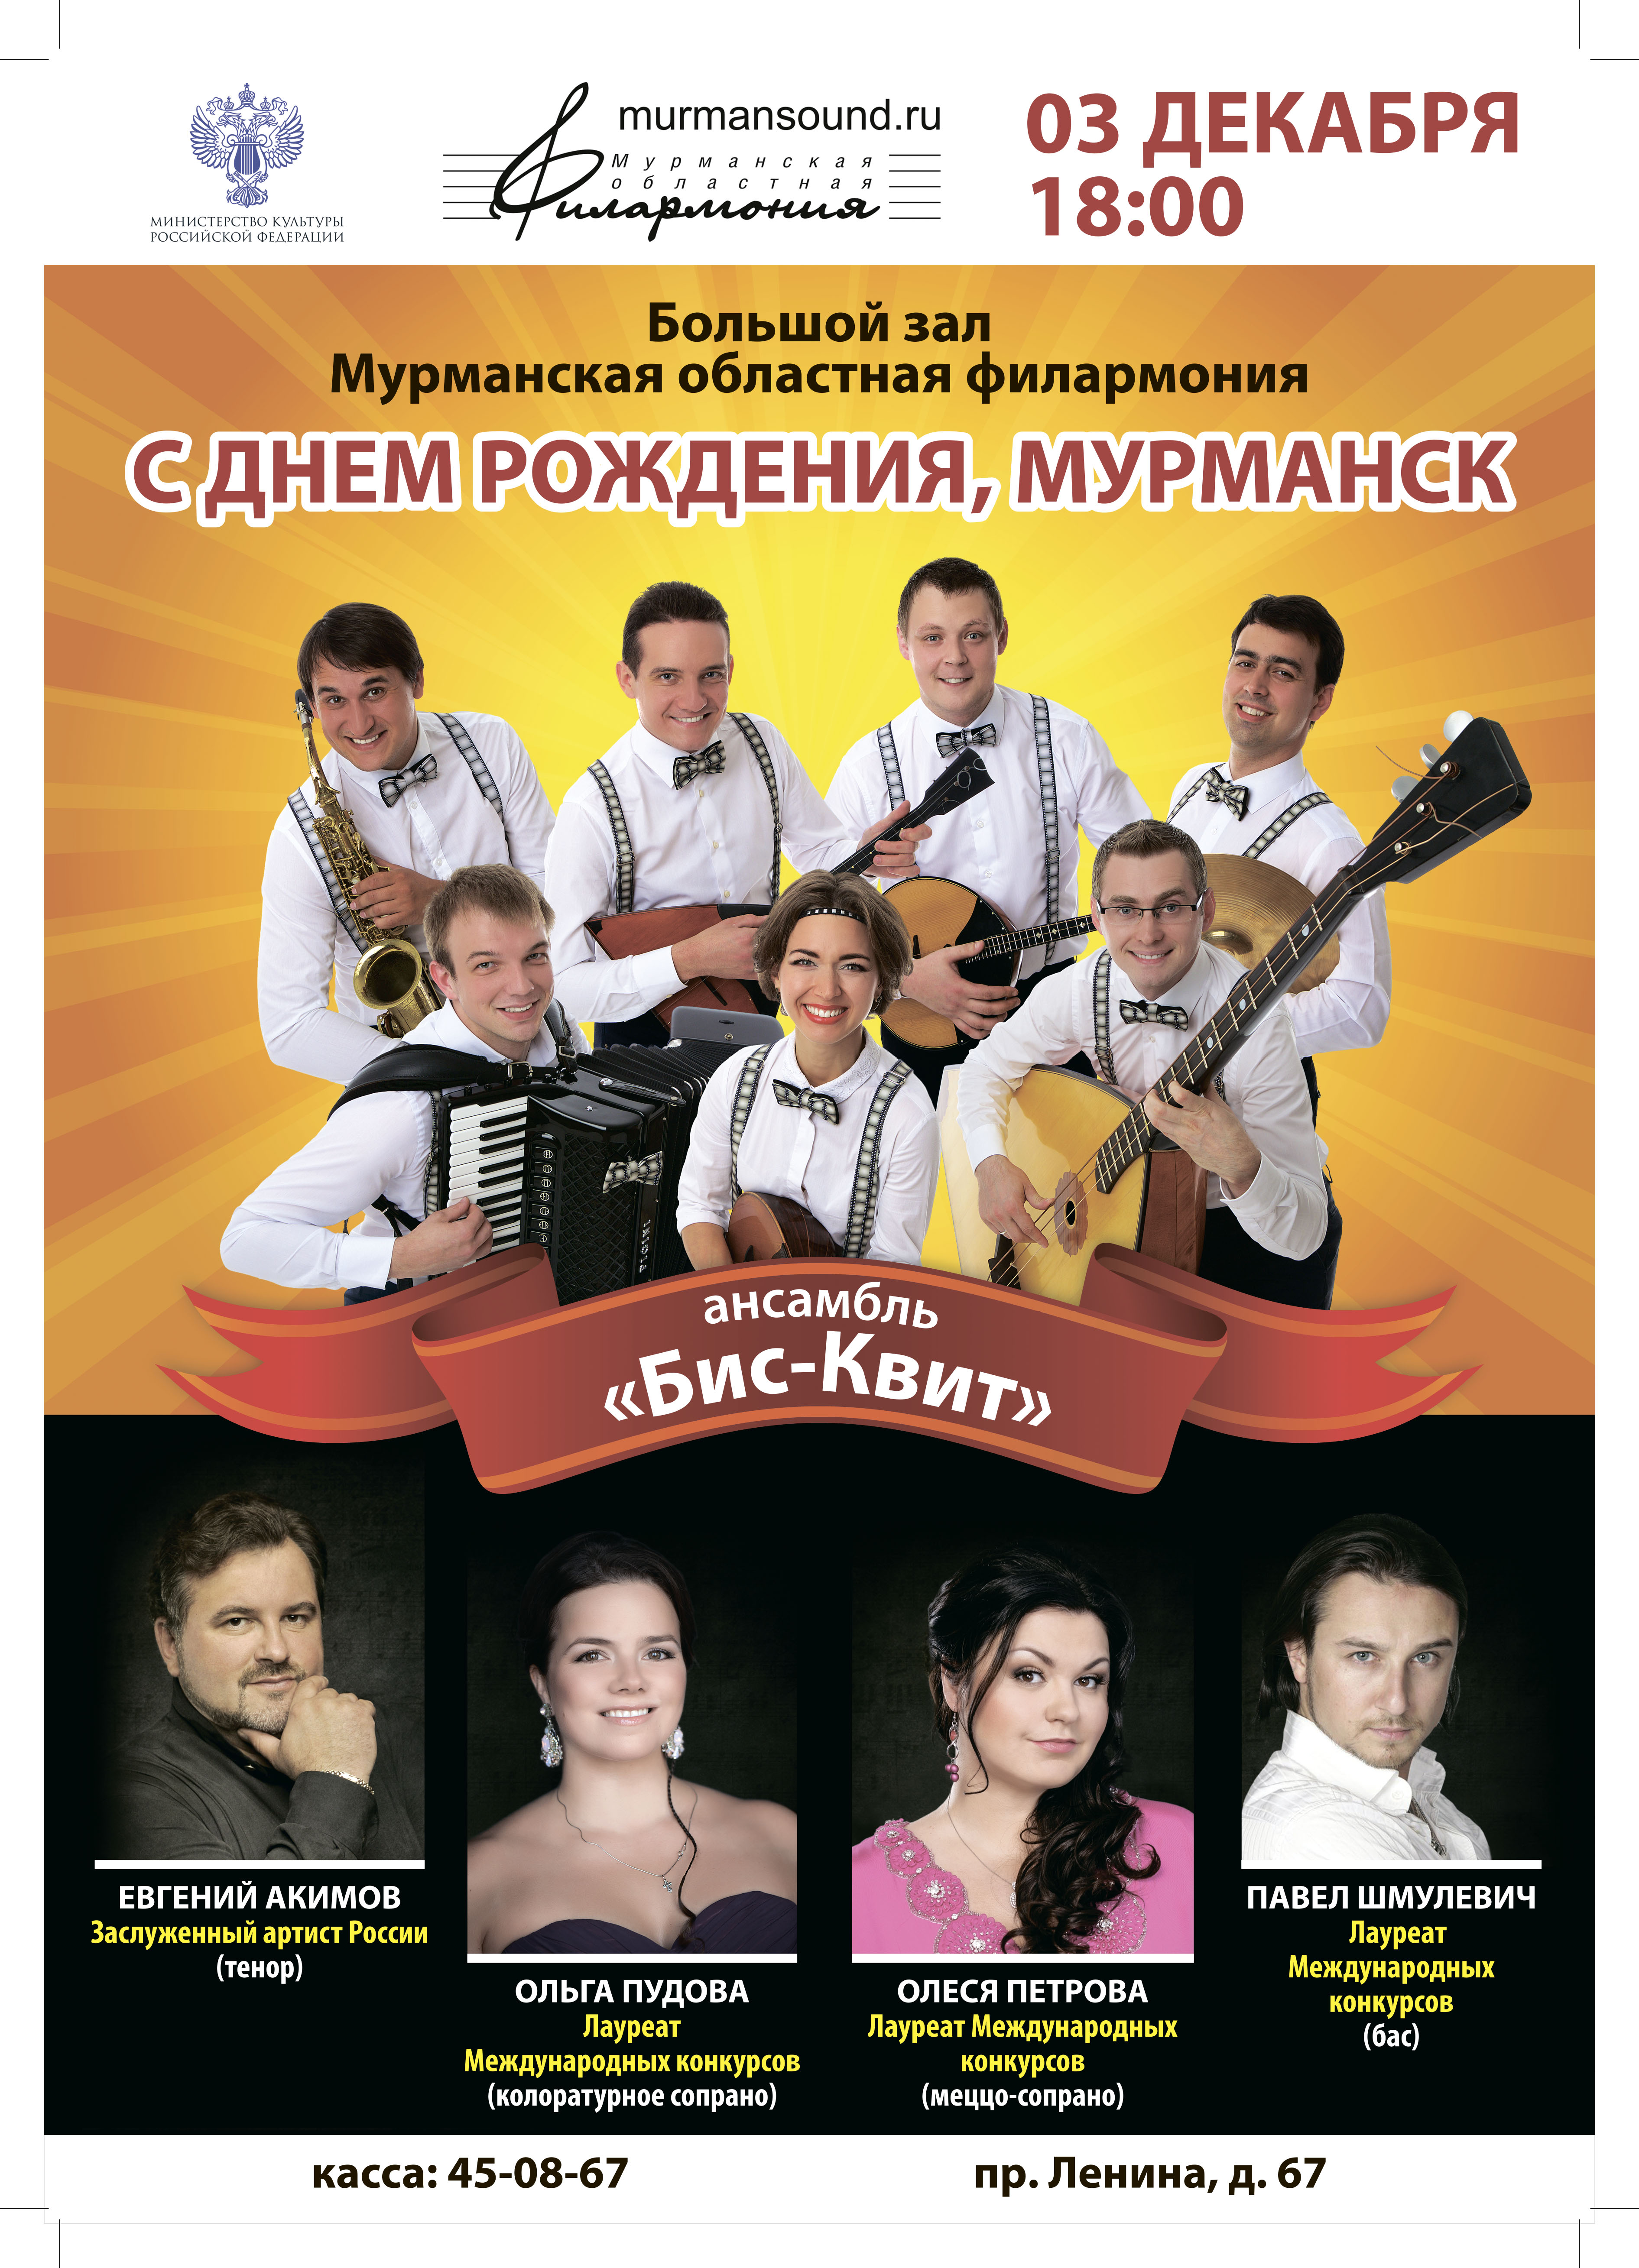 Праздничный концерт в честь 100-летия Мурманска